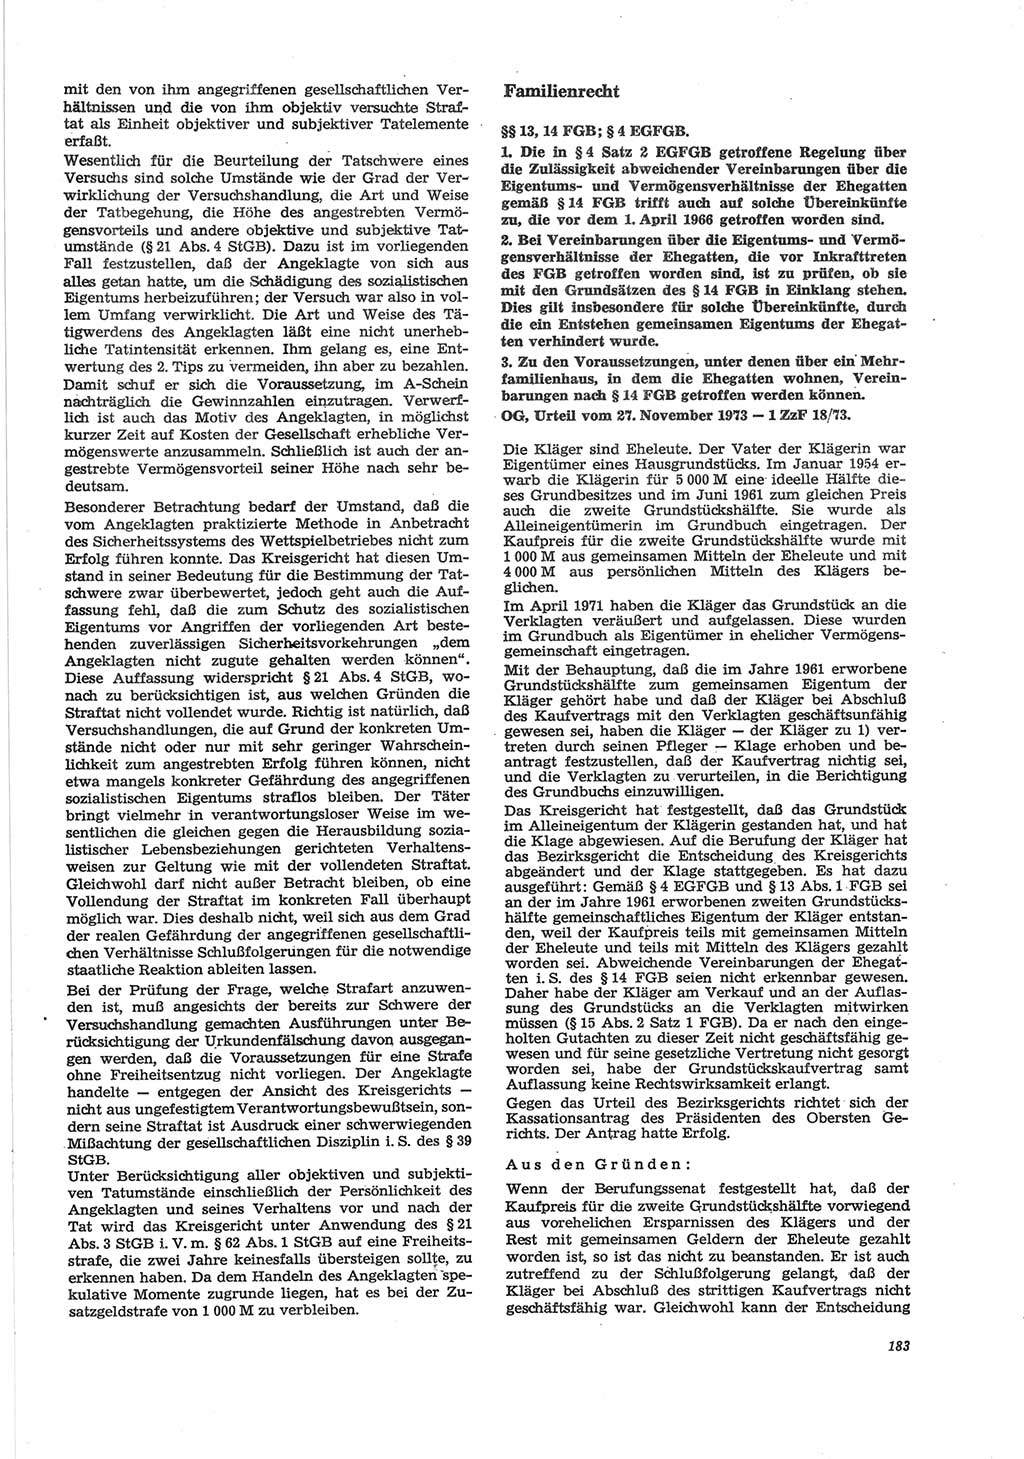 Neue Justiz (NJ), Zeitschrift für Recht und Rechtswissenschaft [Deutsche Demokratische Republik (DDR)], 28. Jahrgang 1974, Seite 183 (NJ DDR 1974, S. 183)